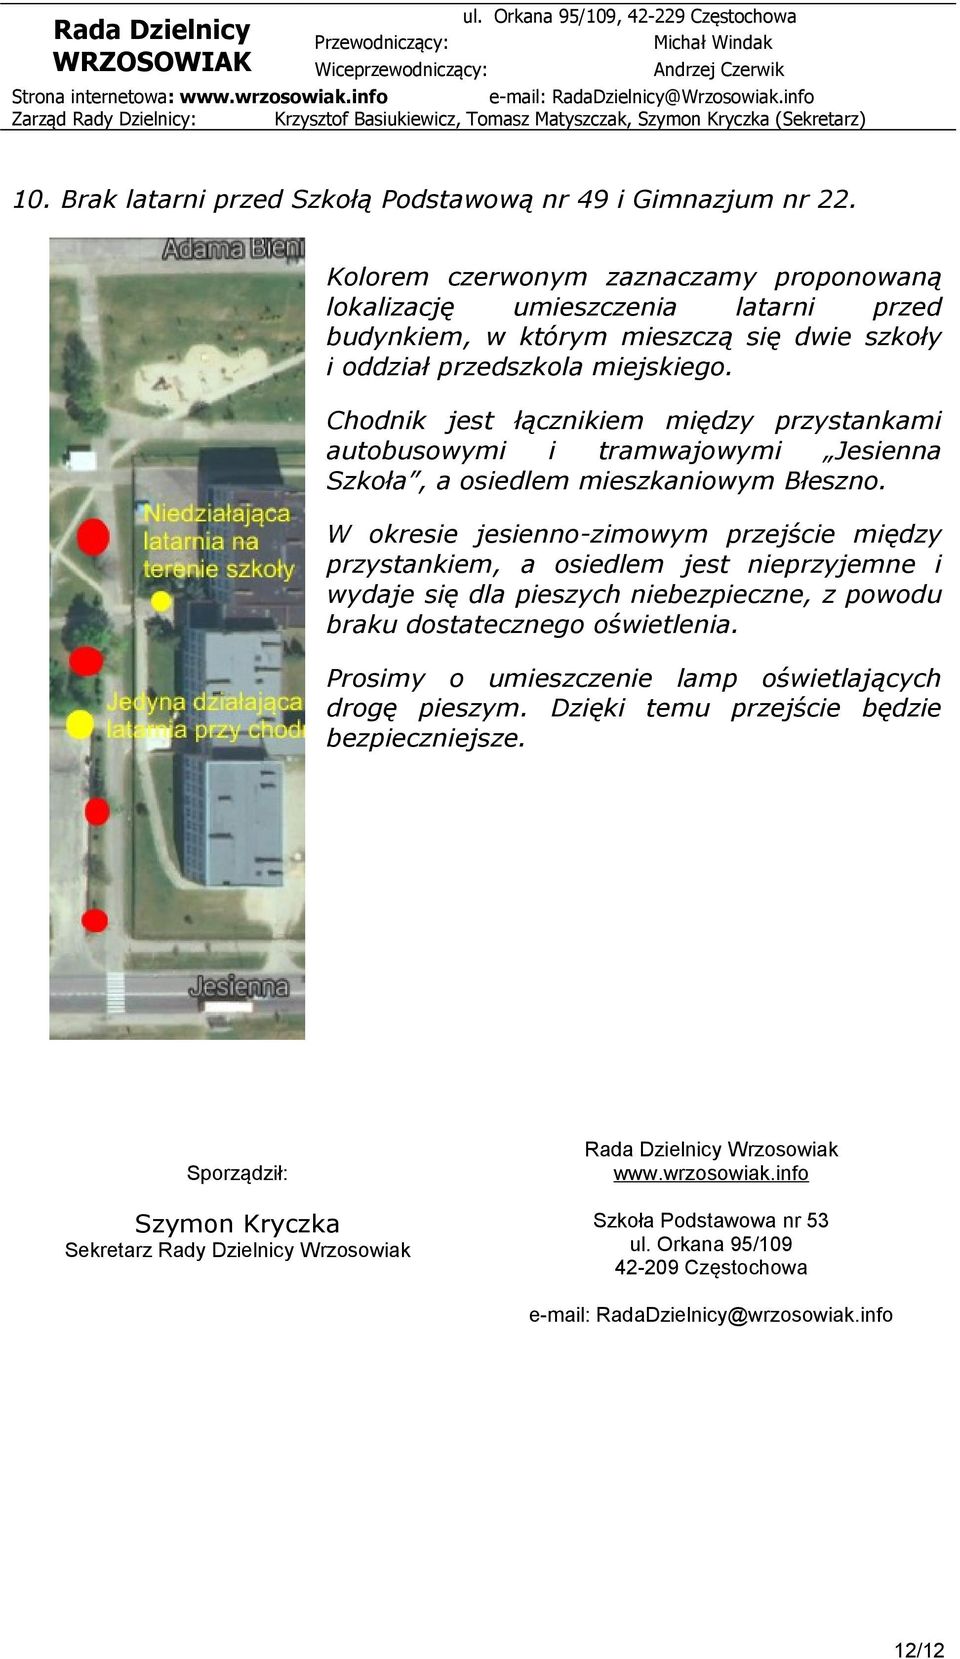 Chodnik jest łącznikiem między przystankami autobusowymi i tramwajowymi Jesienna Szkoła, a osiedlem mieszkaniowym Błeszno.